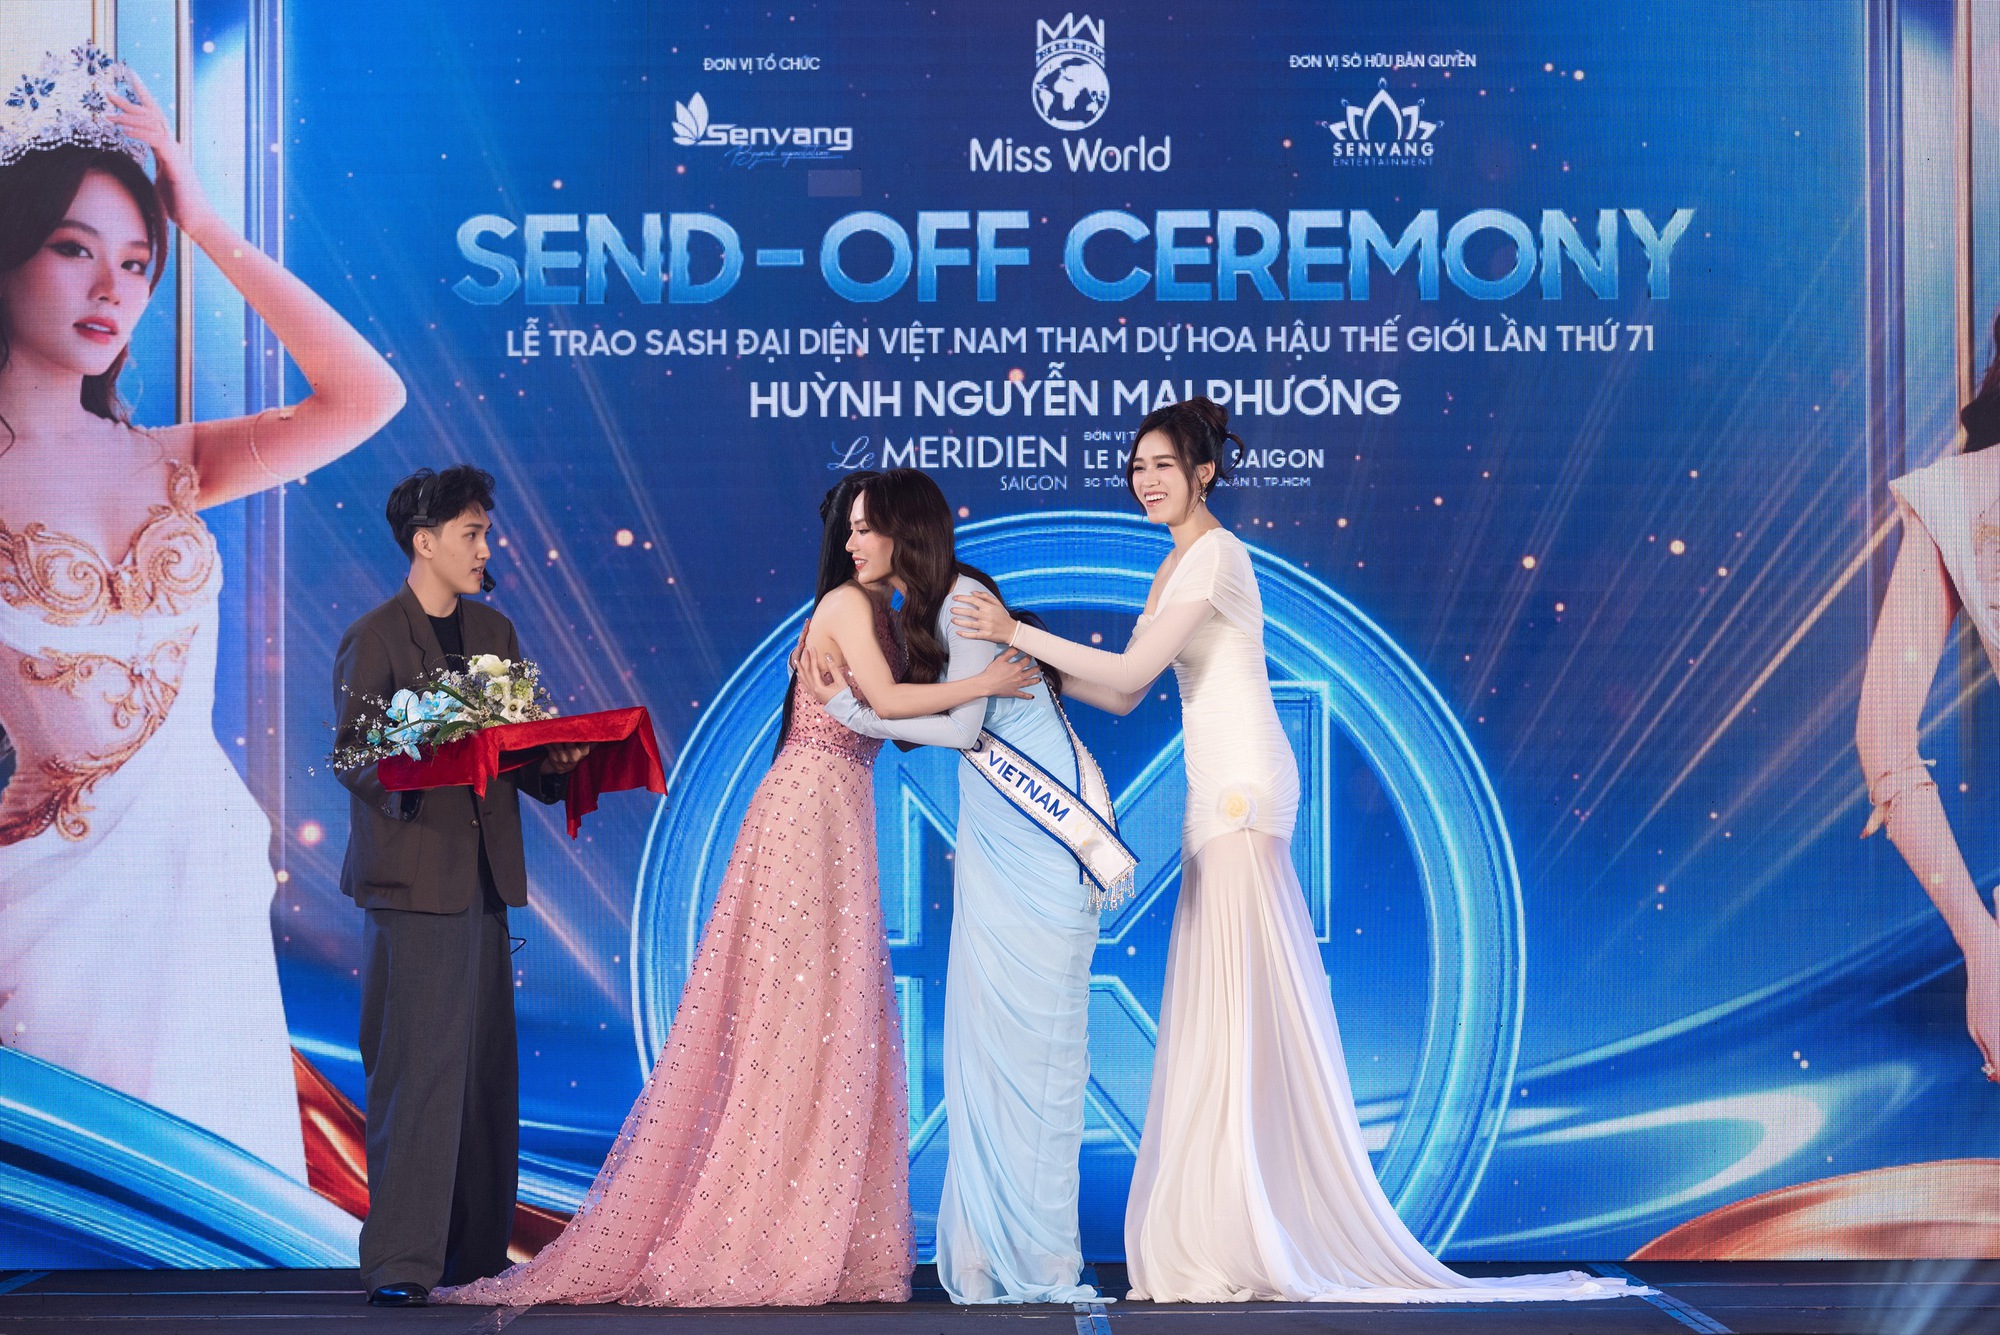 Hoa hậu Mai Phương công bố loạt váy áo tại Miss World, 1 nhân vật đặc biệt và dàn Hậu đình đám góp mặt- Ảnh 3.